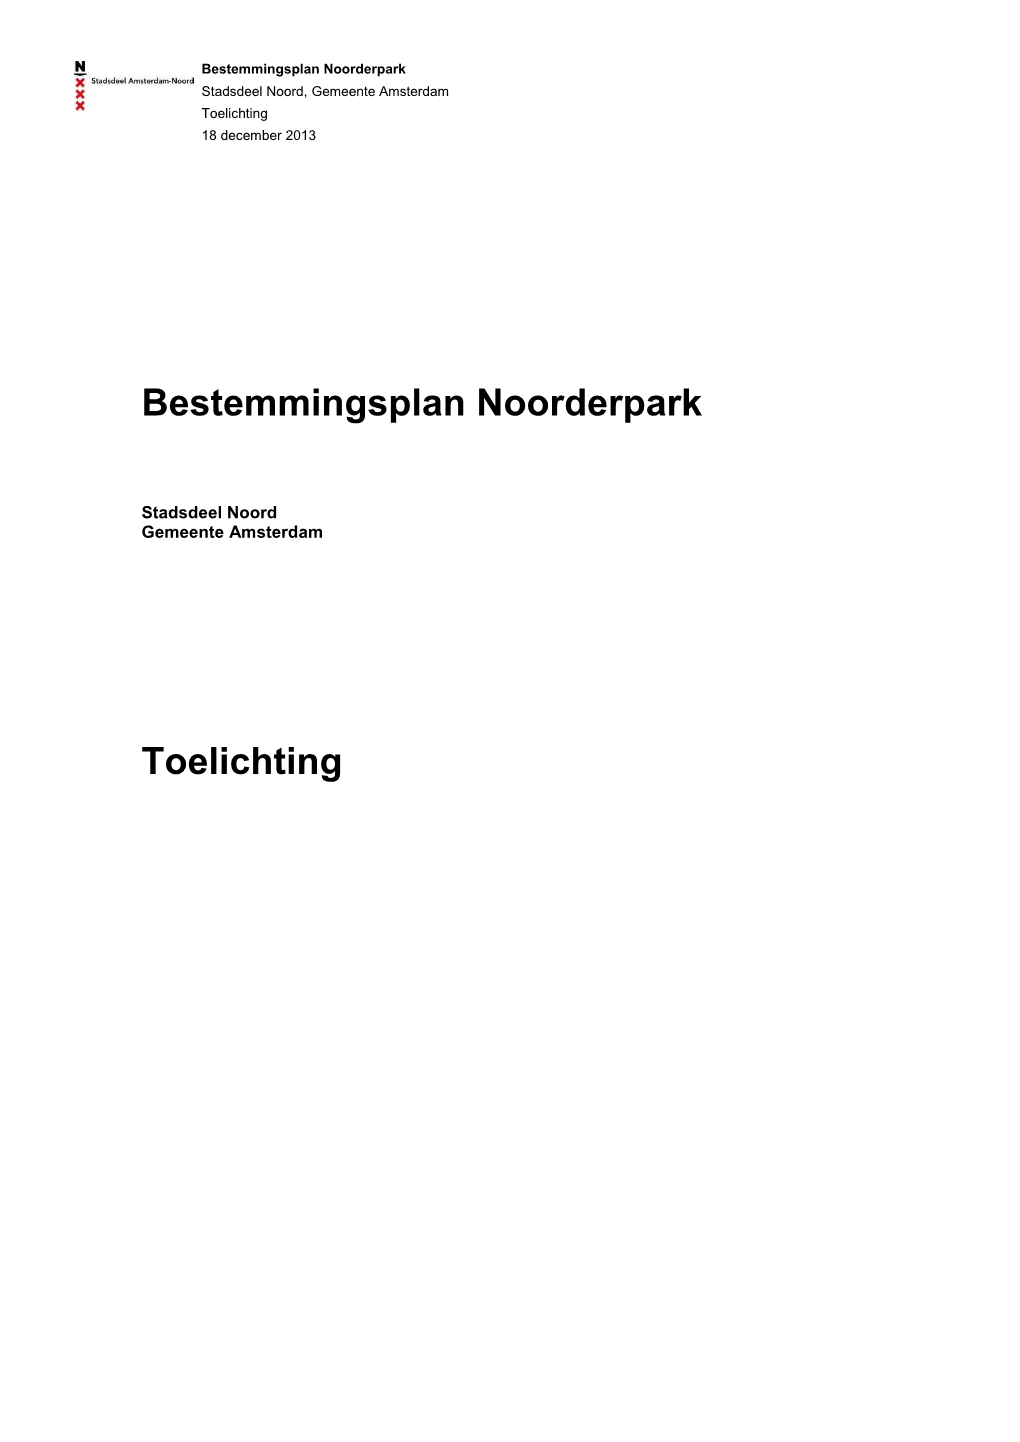 Bestemmingsplan Noorderpark Toelichting